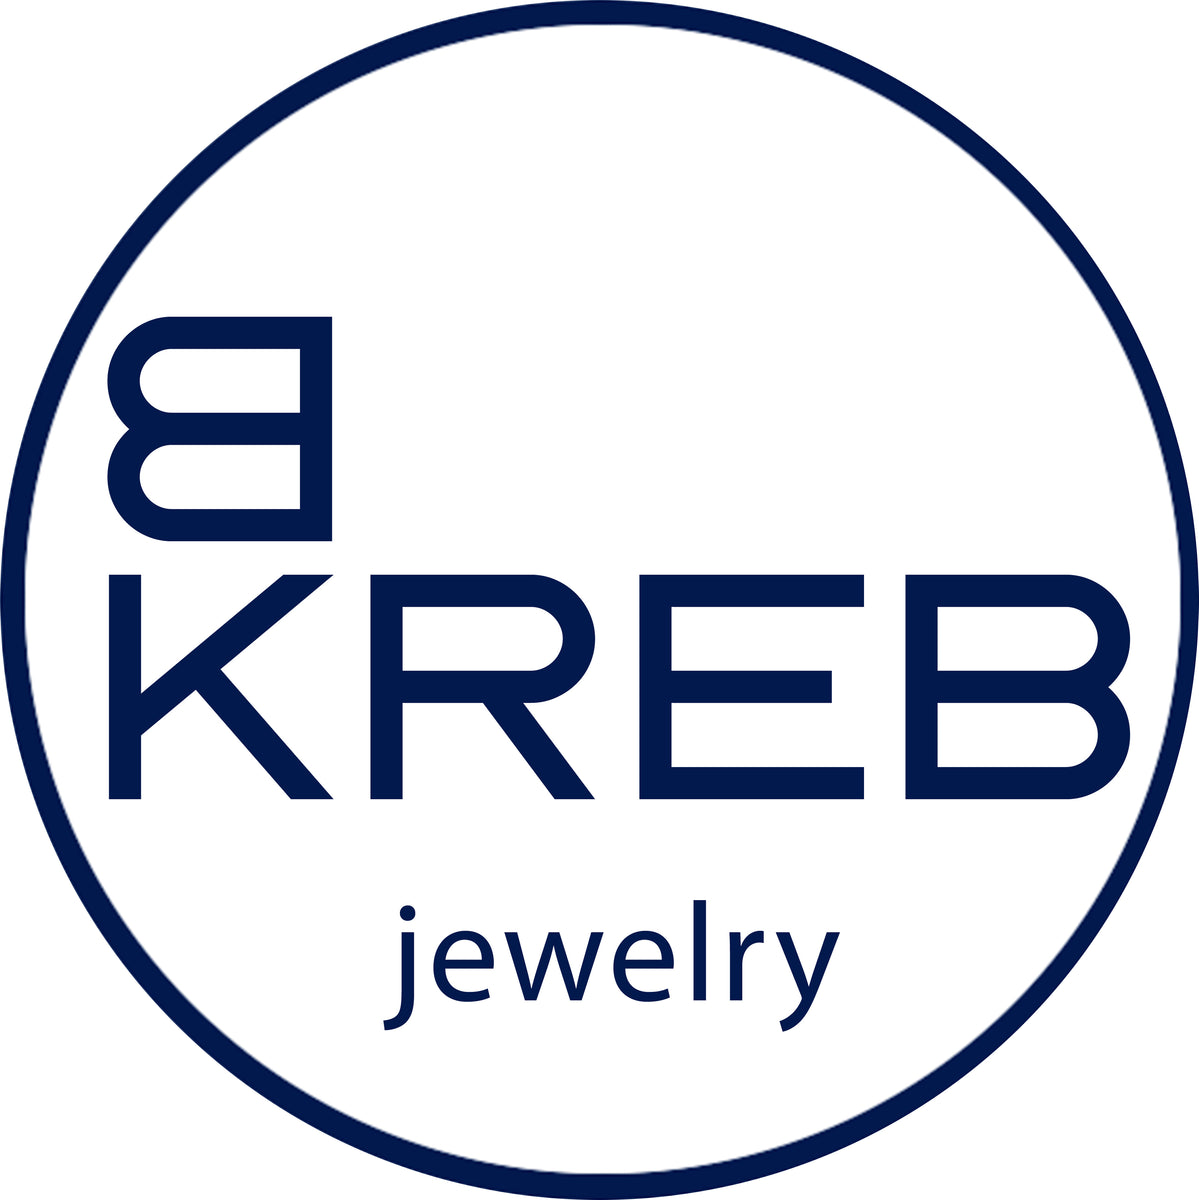 b-kreb-jewelry-i-front-page-marika-magazine